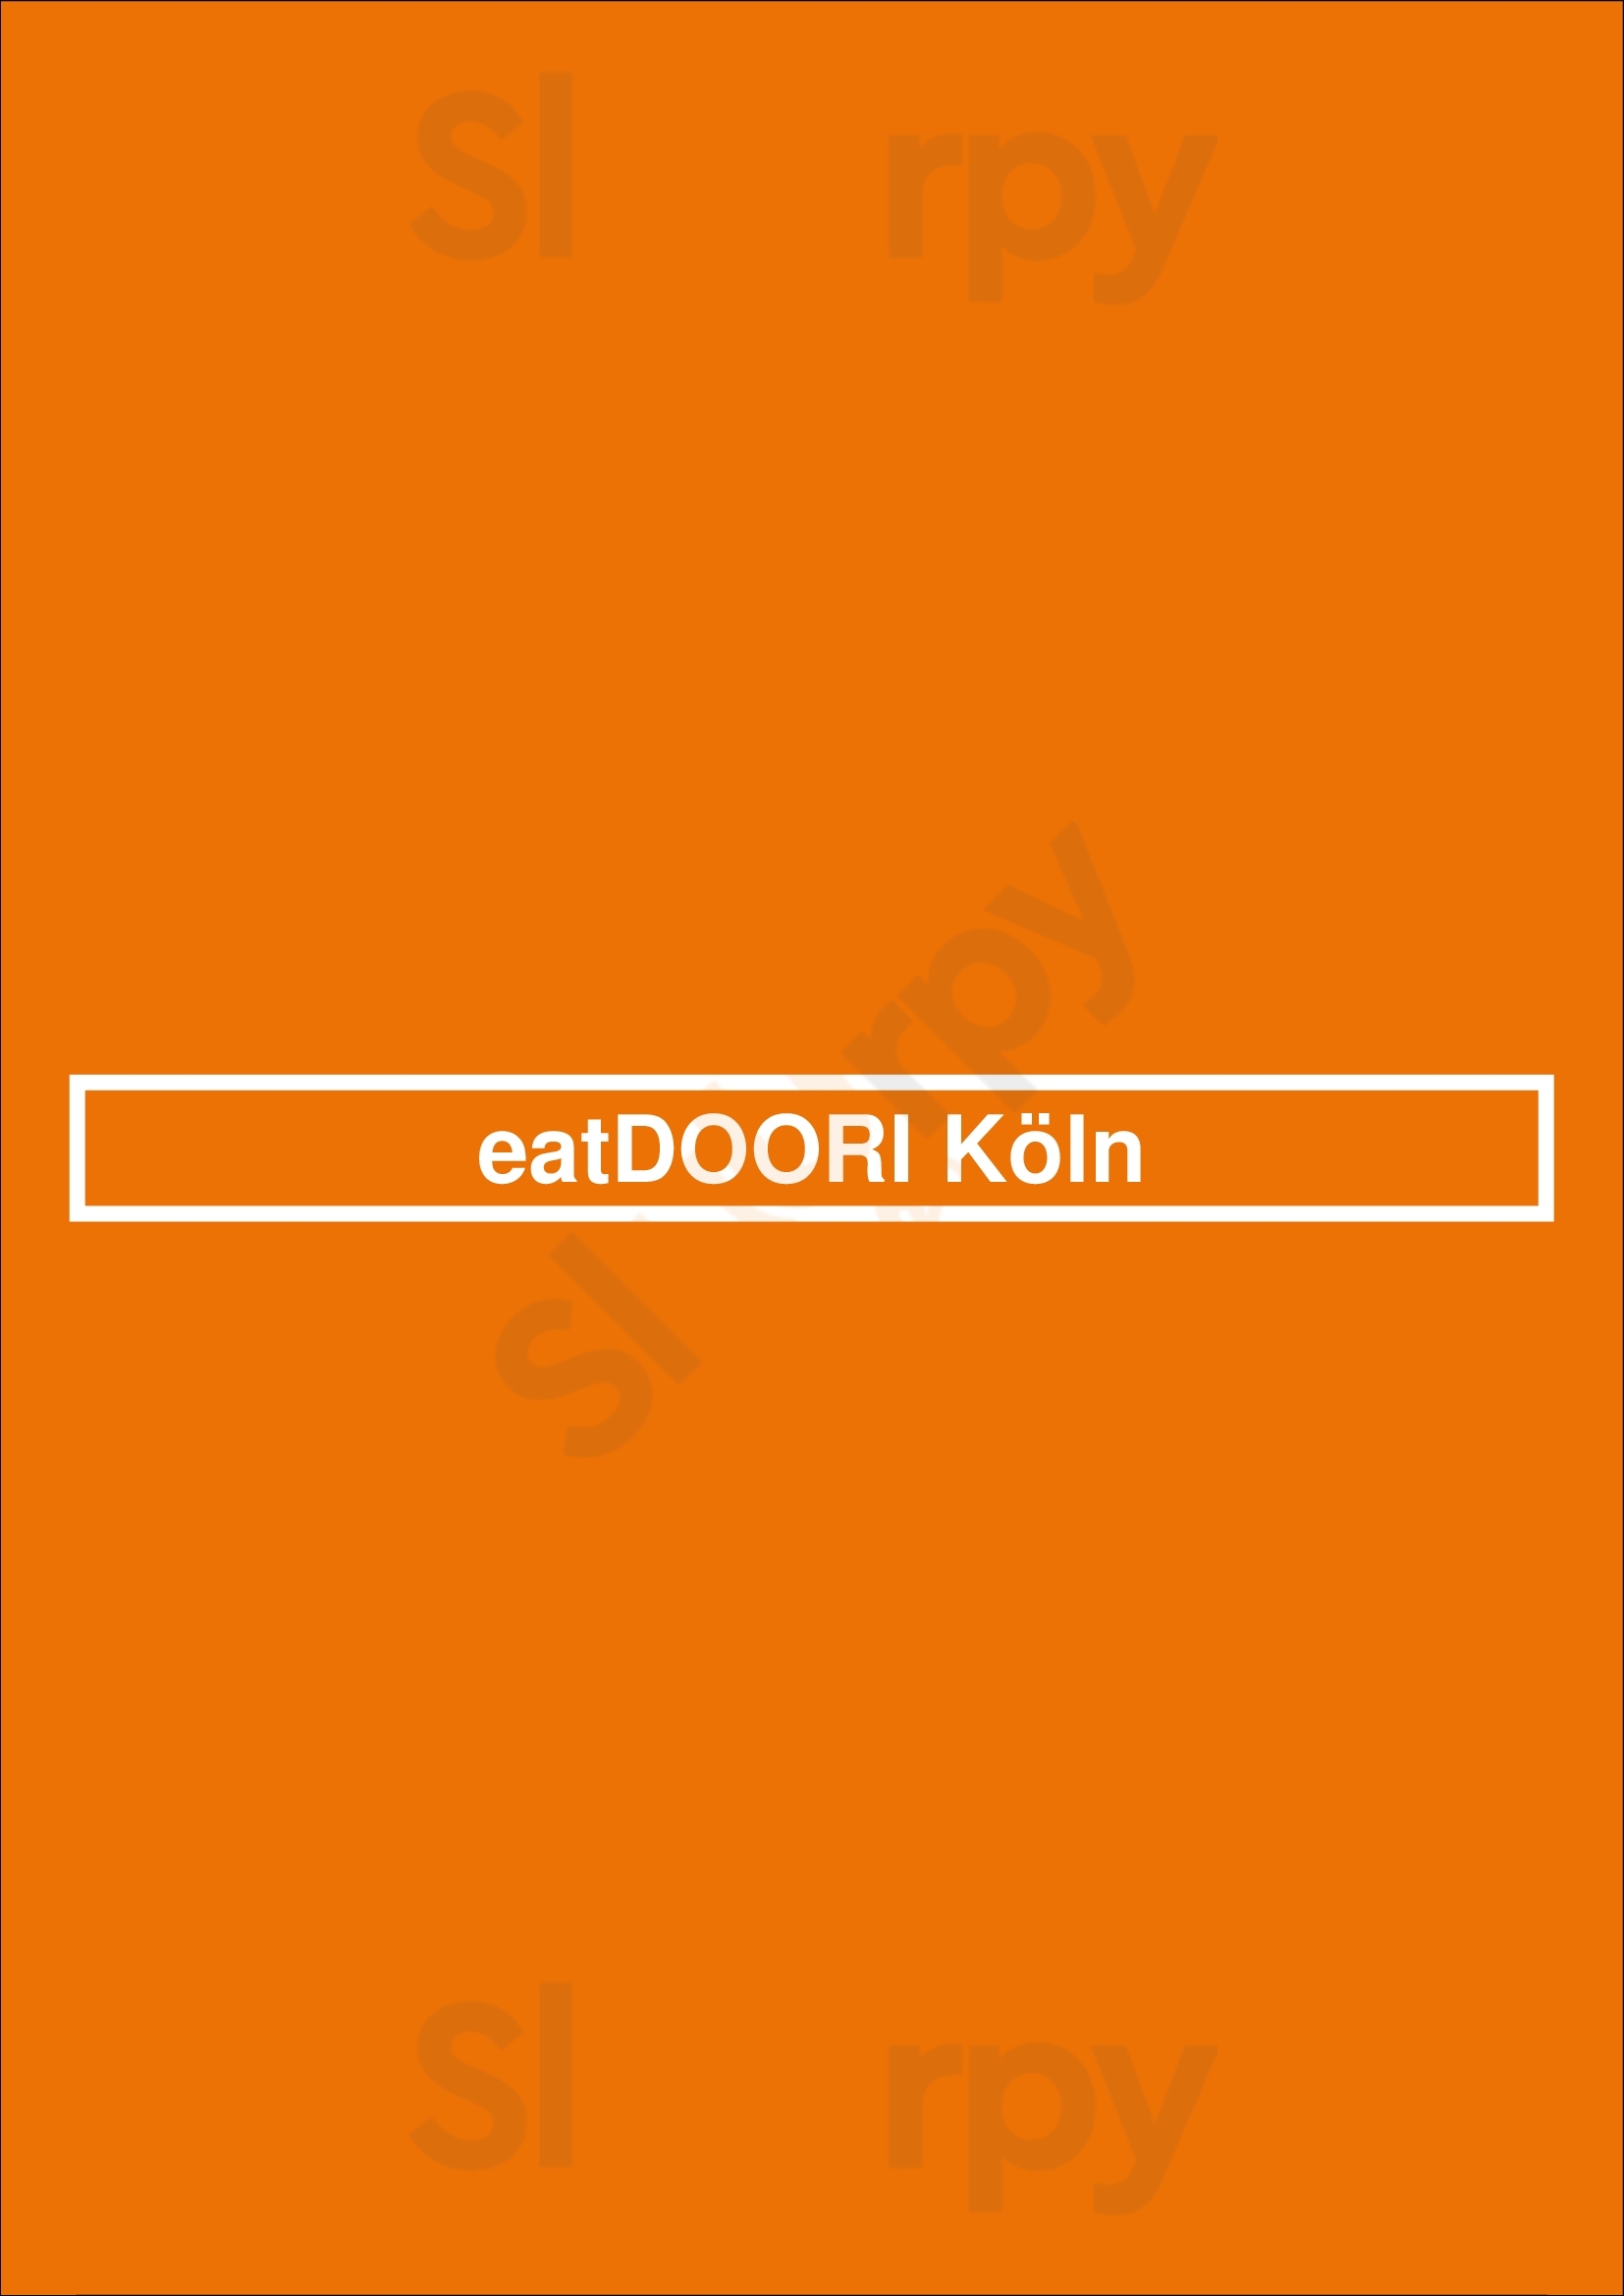 Eatdoori Köln Köln Menu - 1